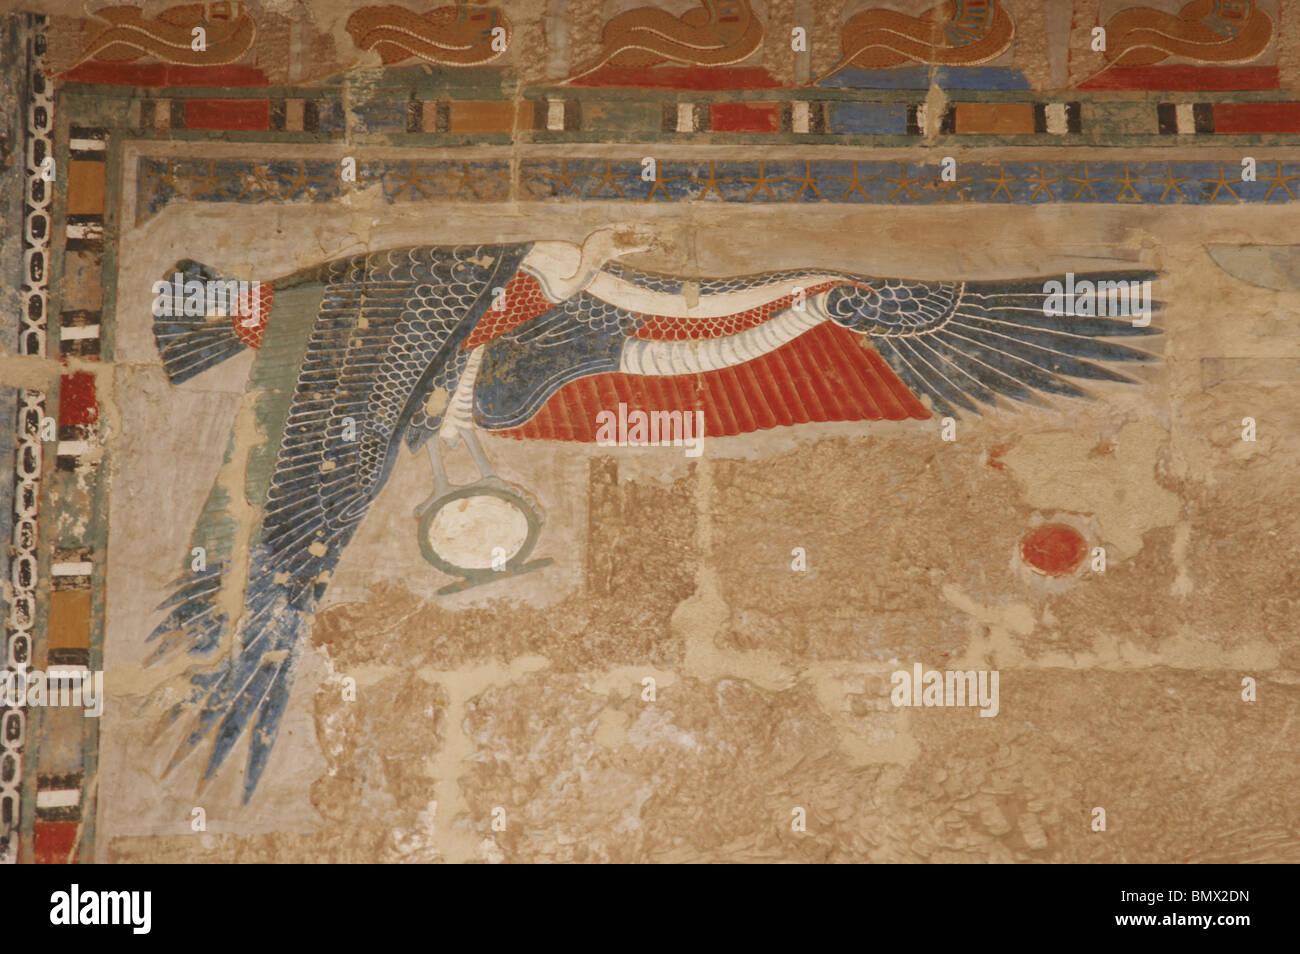 Geier Nekhbet ihre schützenden Flügel zu öffnen. Polychrome Relief im Tempel der Hatschepsut. Deir el-Bahari. Ägypten. Stockfoto